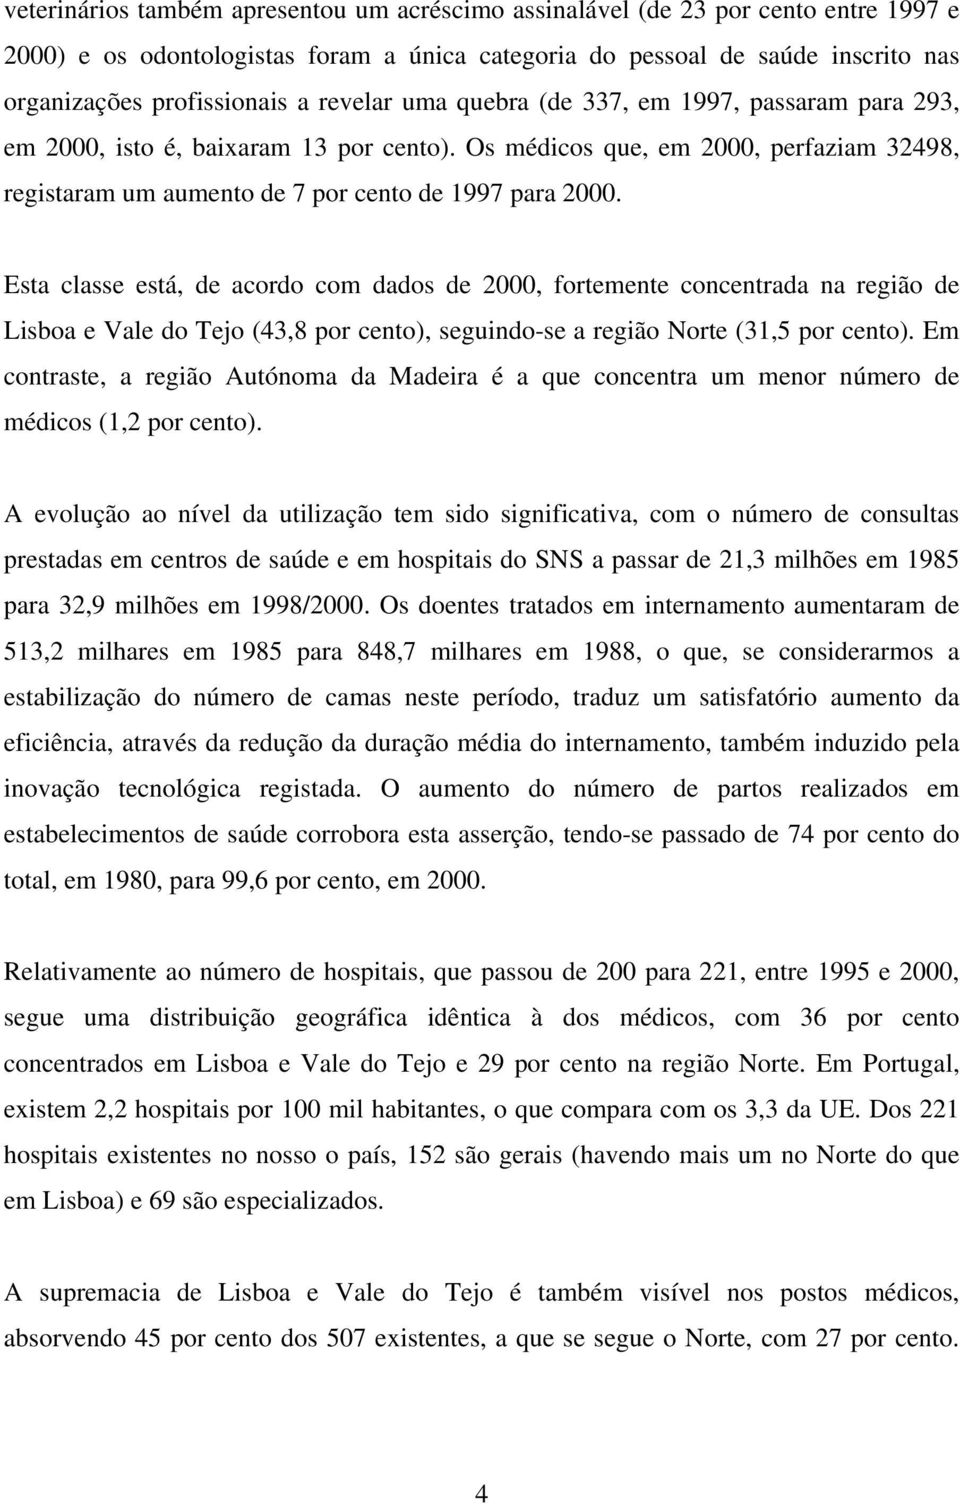 Esta classe está, de acordo com dados de 2000, fortemente concentrada na região de Lisboa e Vale do Tejo (43,8 por cento), seguindo-se a região Norte (31,5 por cento).